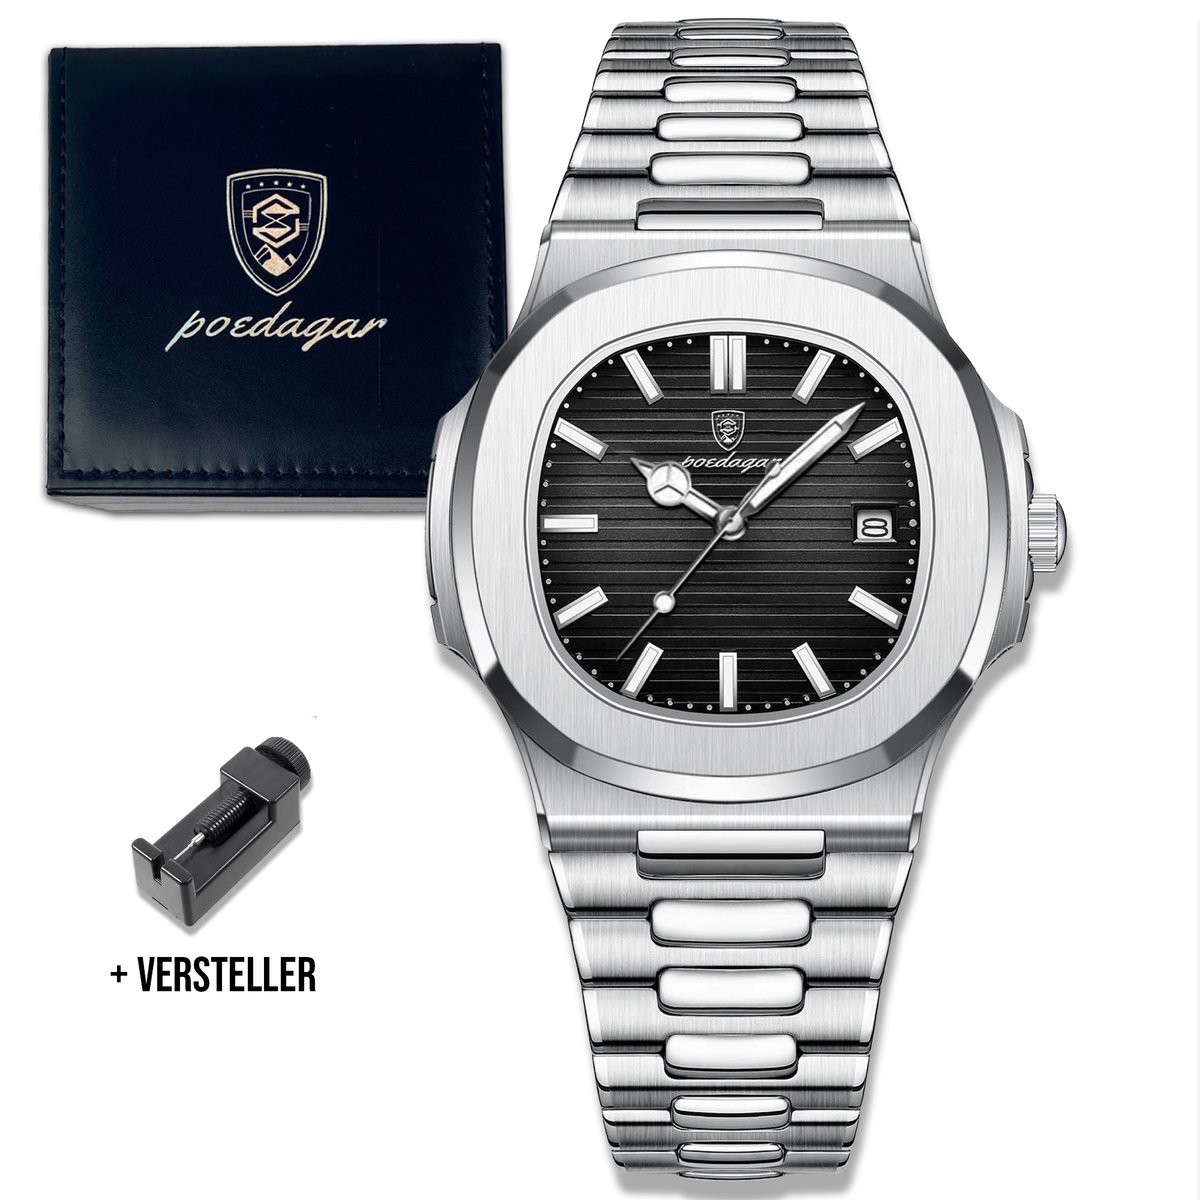 Horloge voor heren Mannen horloge - Heren horloge - Horloge heren - Waterdicht - Zilver - 43 mm - Incl. Opbergdoos & Verkleiner - Poedagar